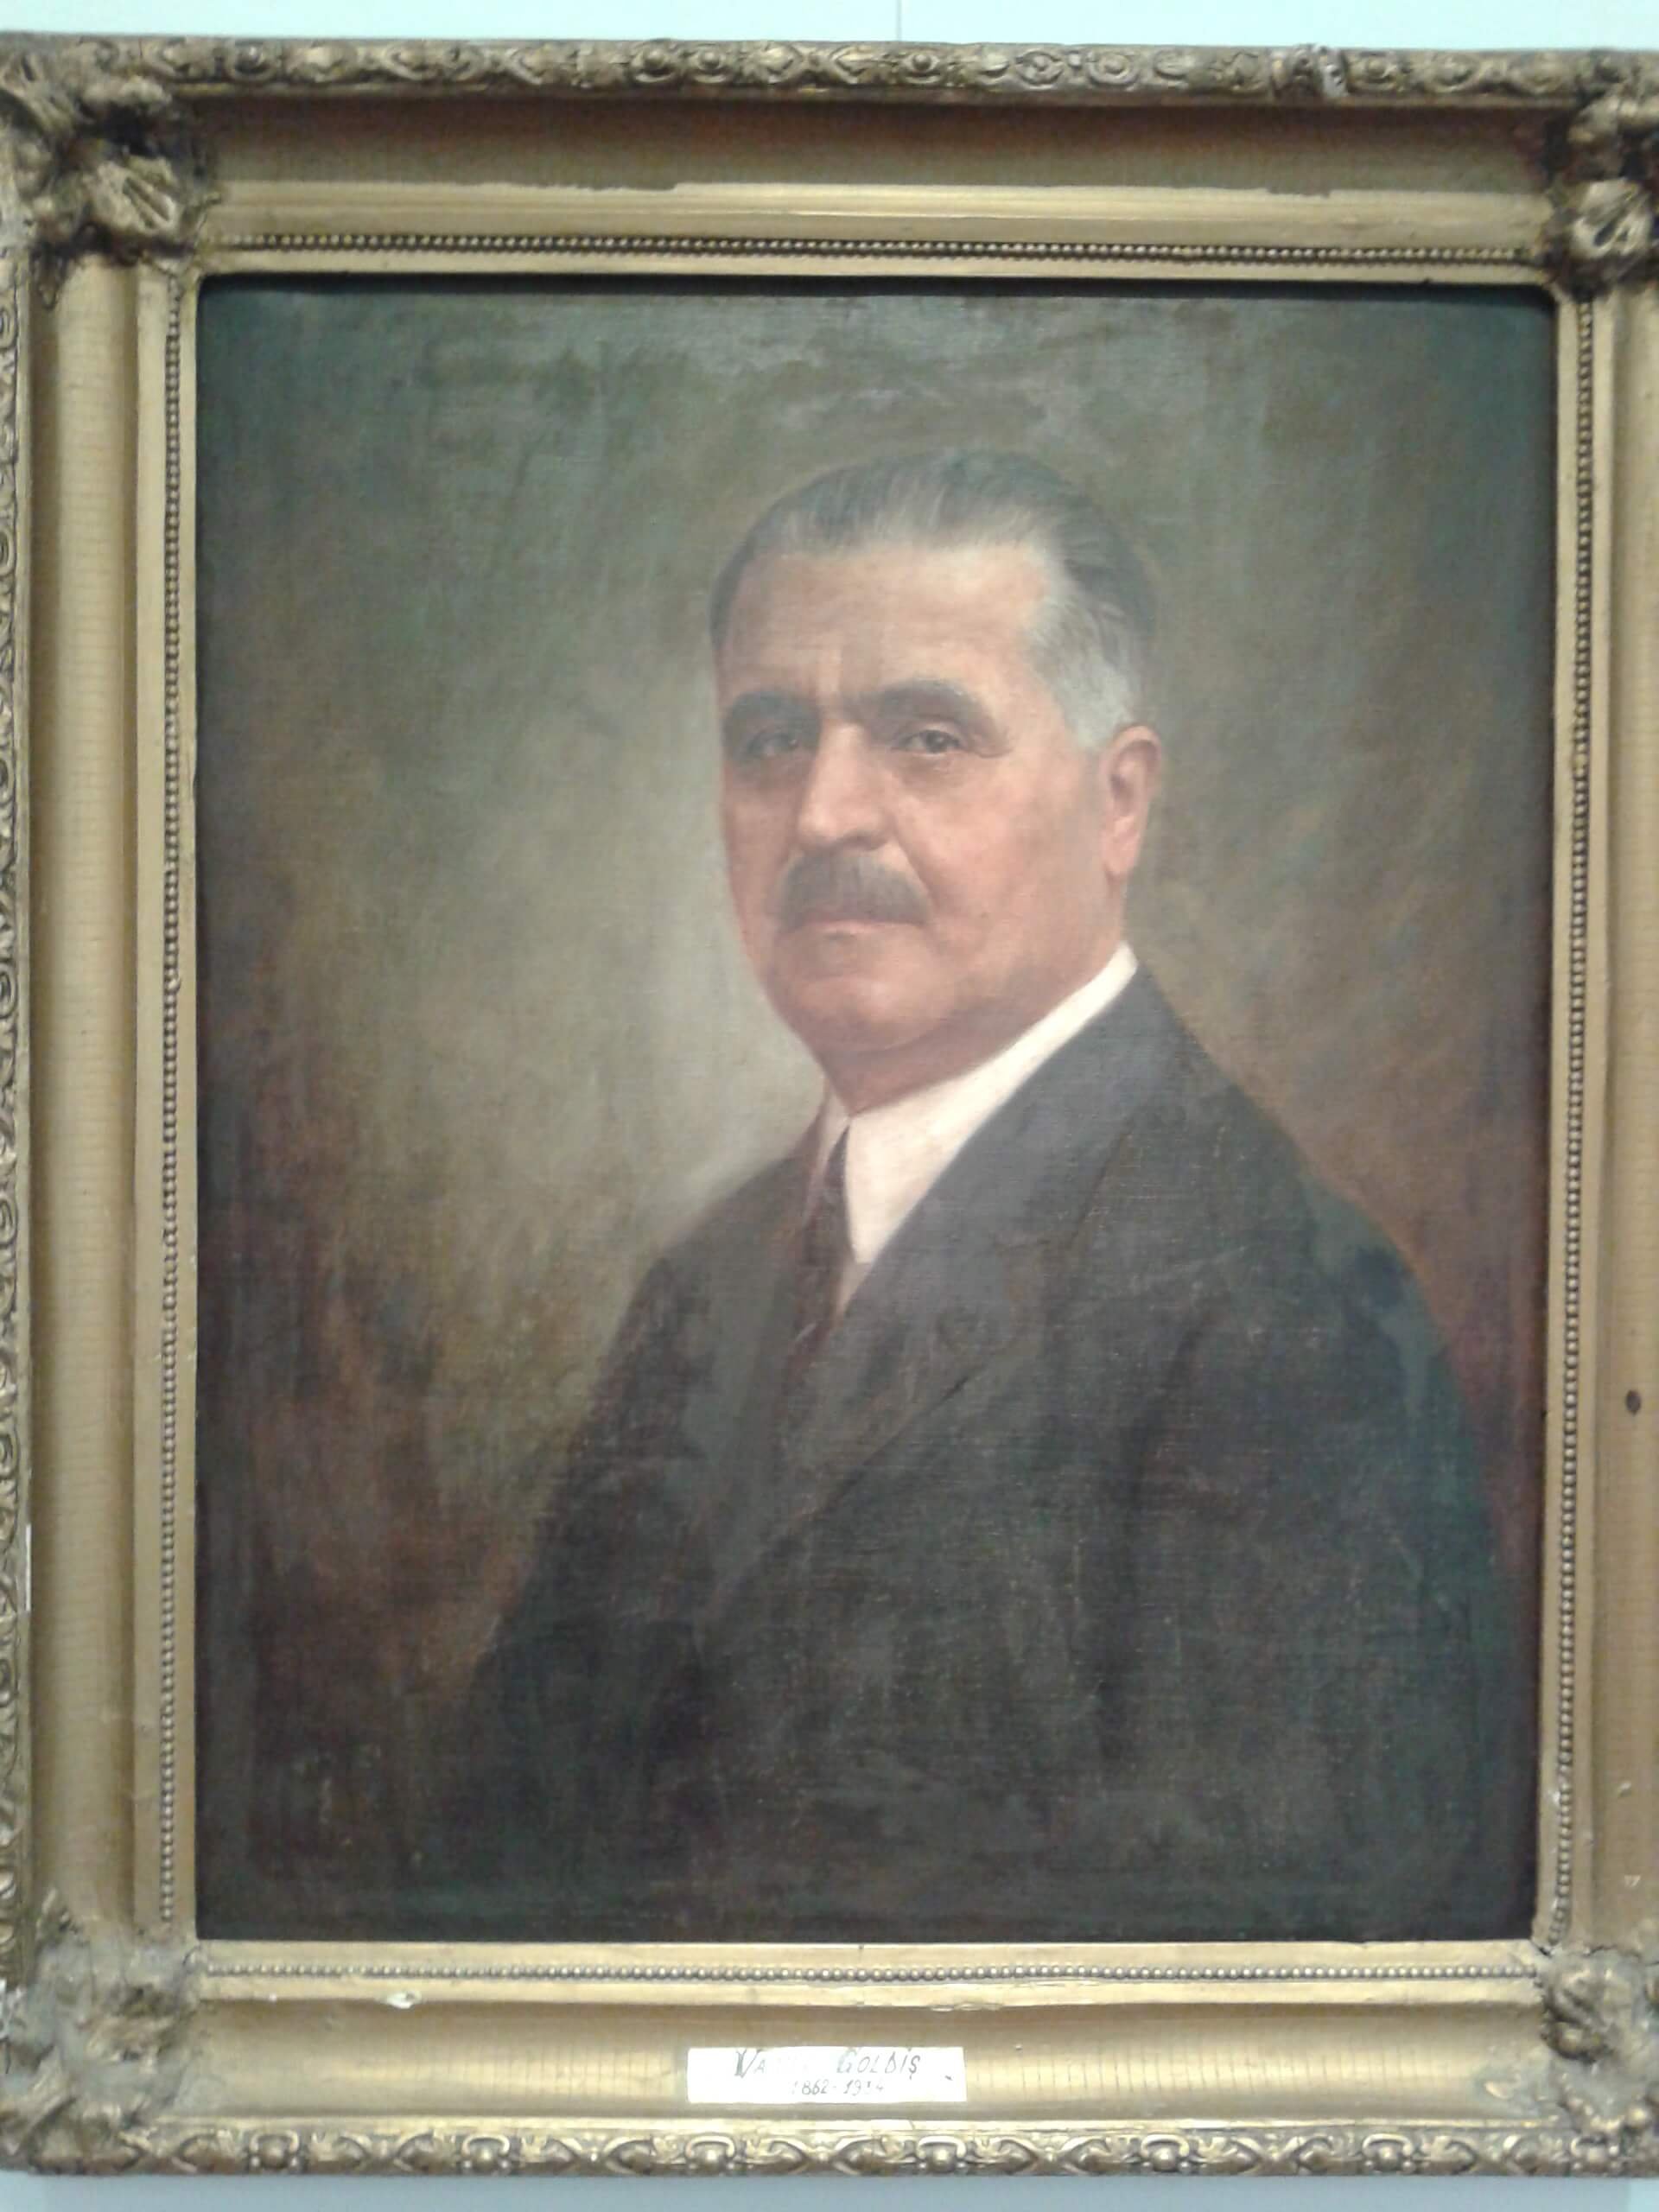 Vasile Goldiș - Director al ziarului "Românul" (1911) și membru în Consiliul Național Central Român (1918)